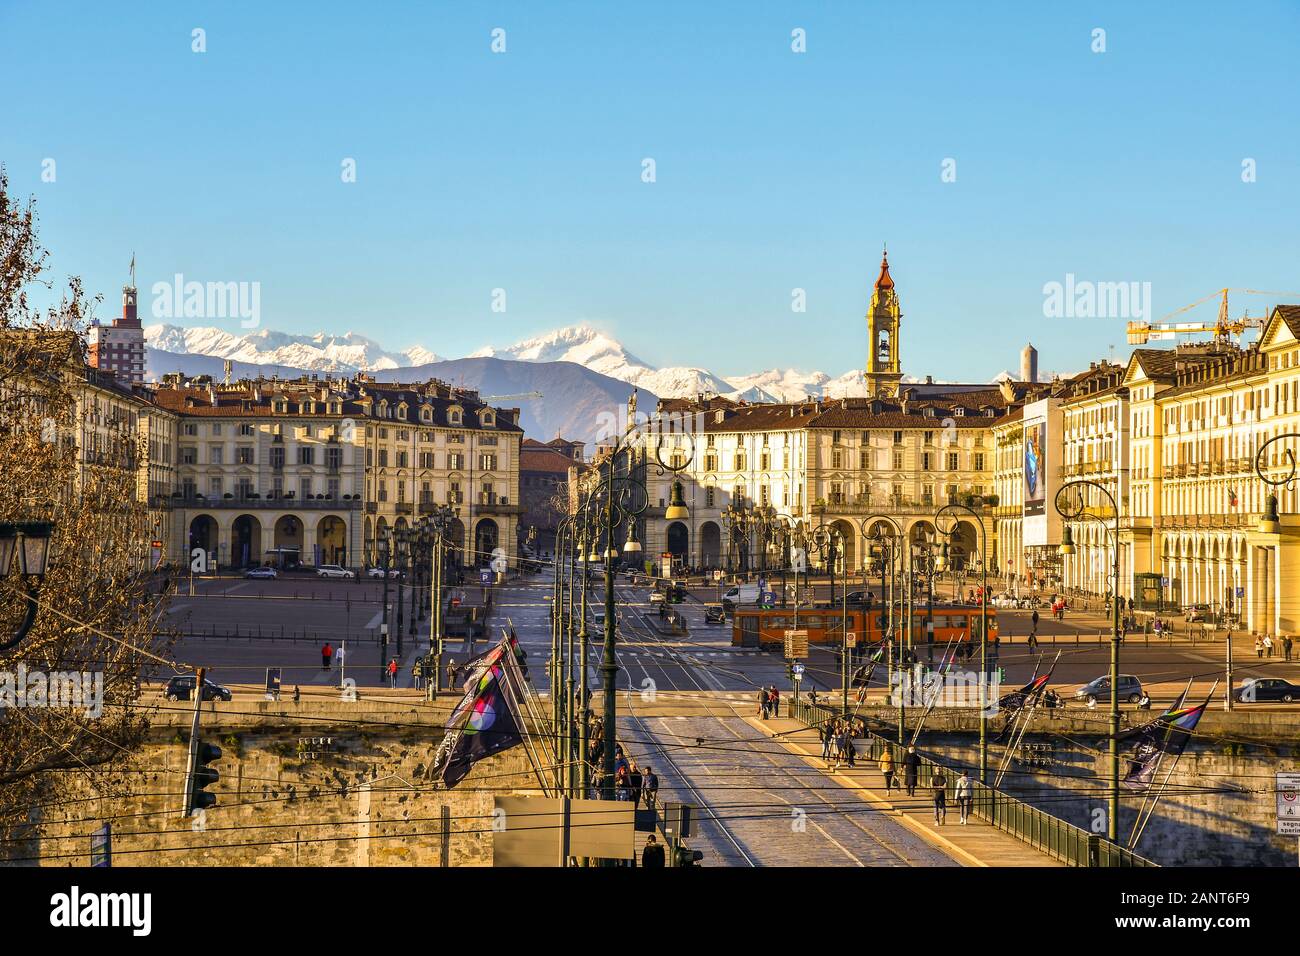 Vista in elevazione della Piazza Vittorio Veneto con il ponte Vittorio Emanuele I e le Alpi mountain range in background in inverno, Torino, Piemonte, Italia Foto Stock